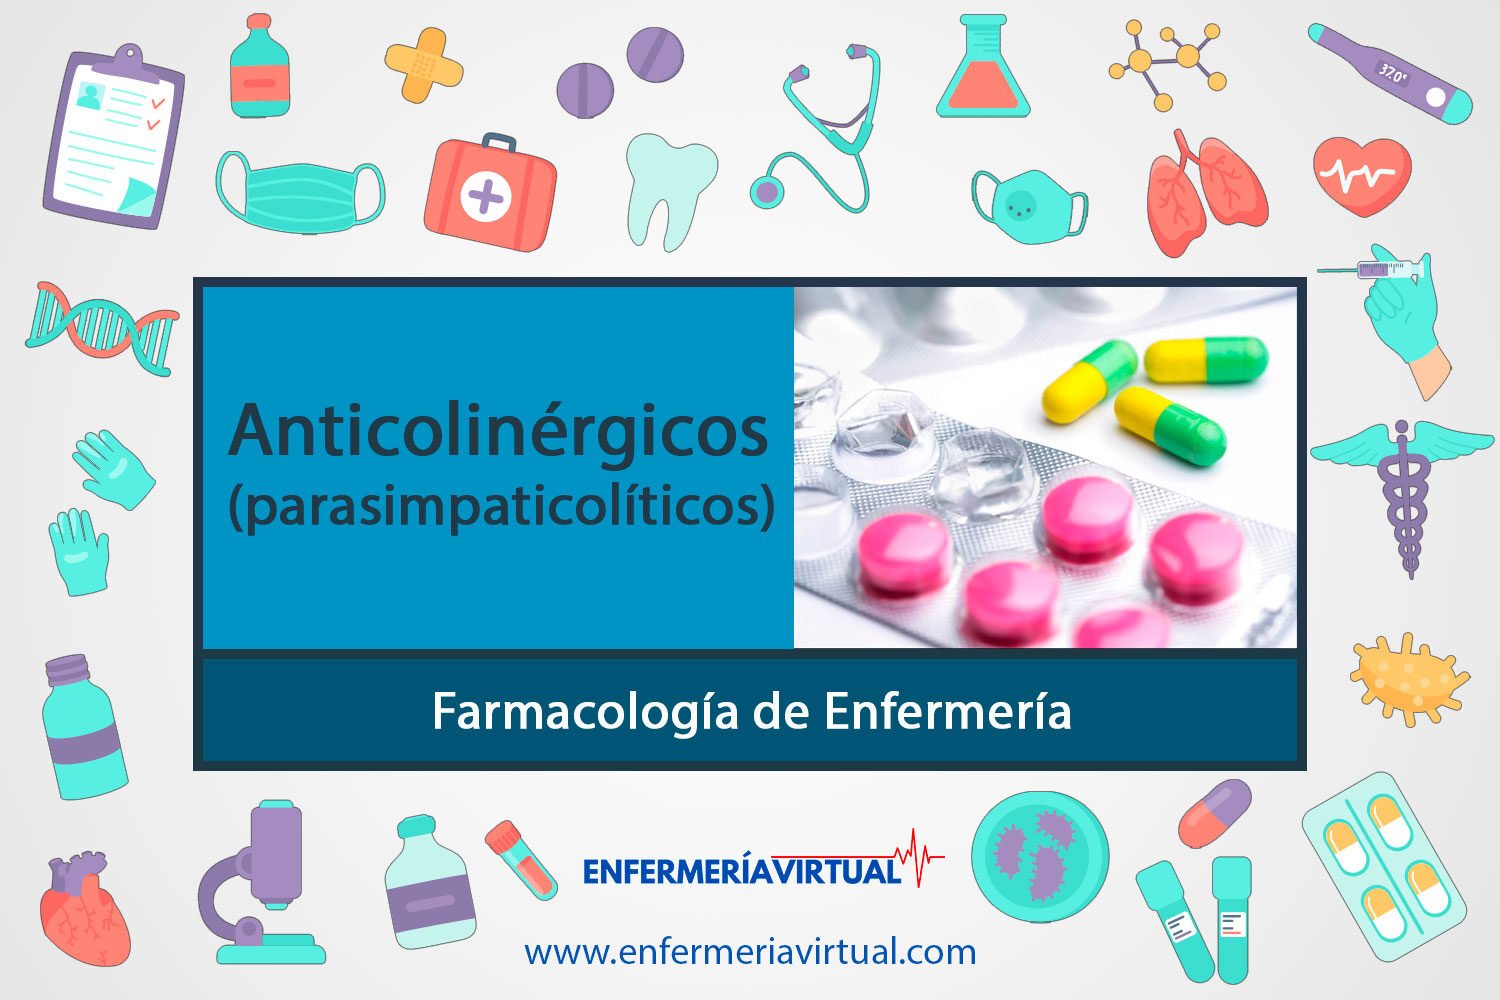 Anticolinérgicos (parasimpaticolíticos)